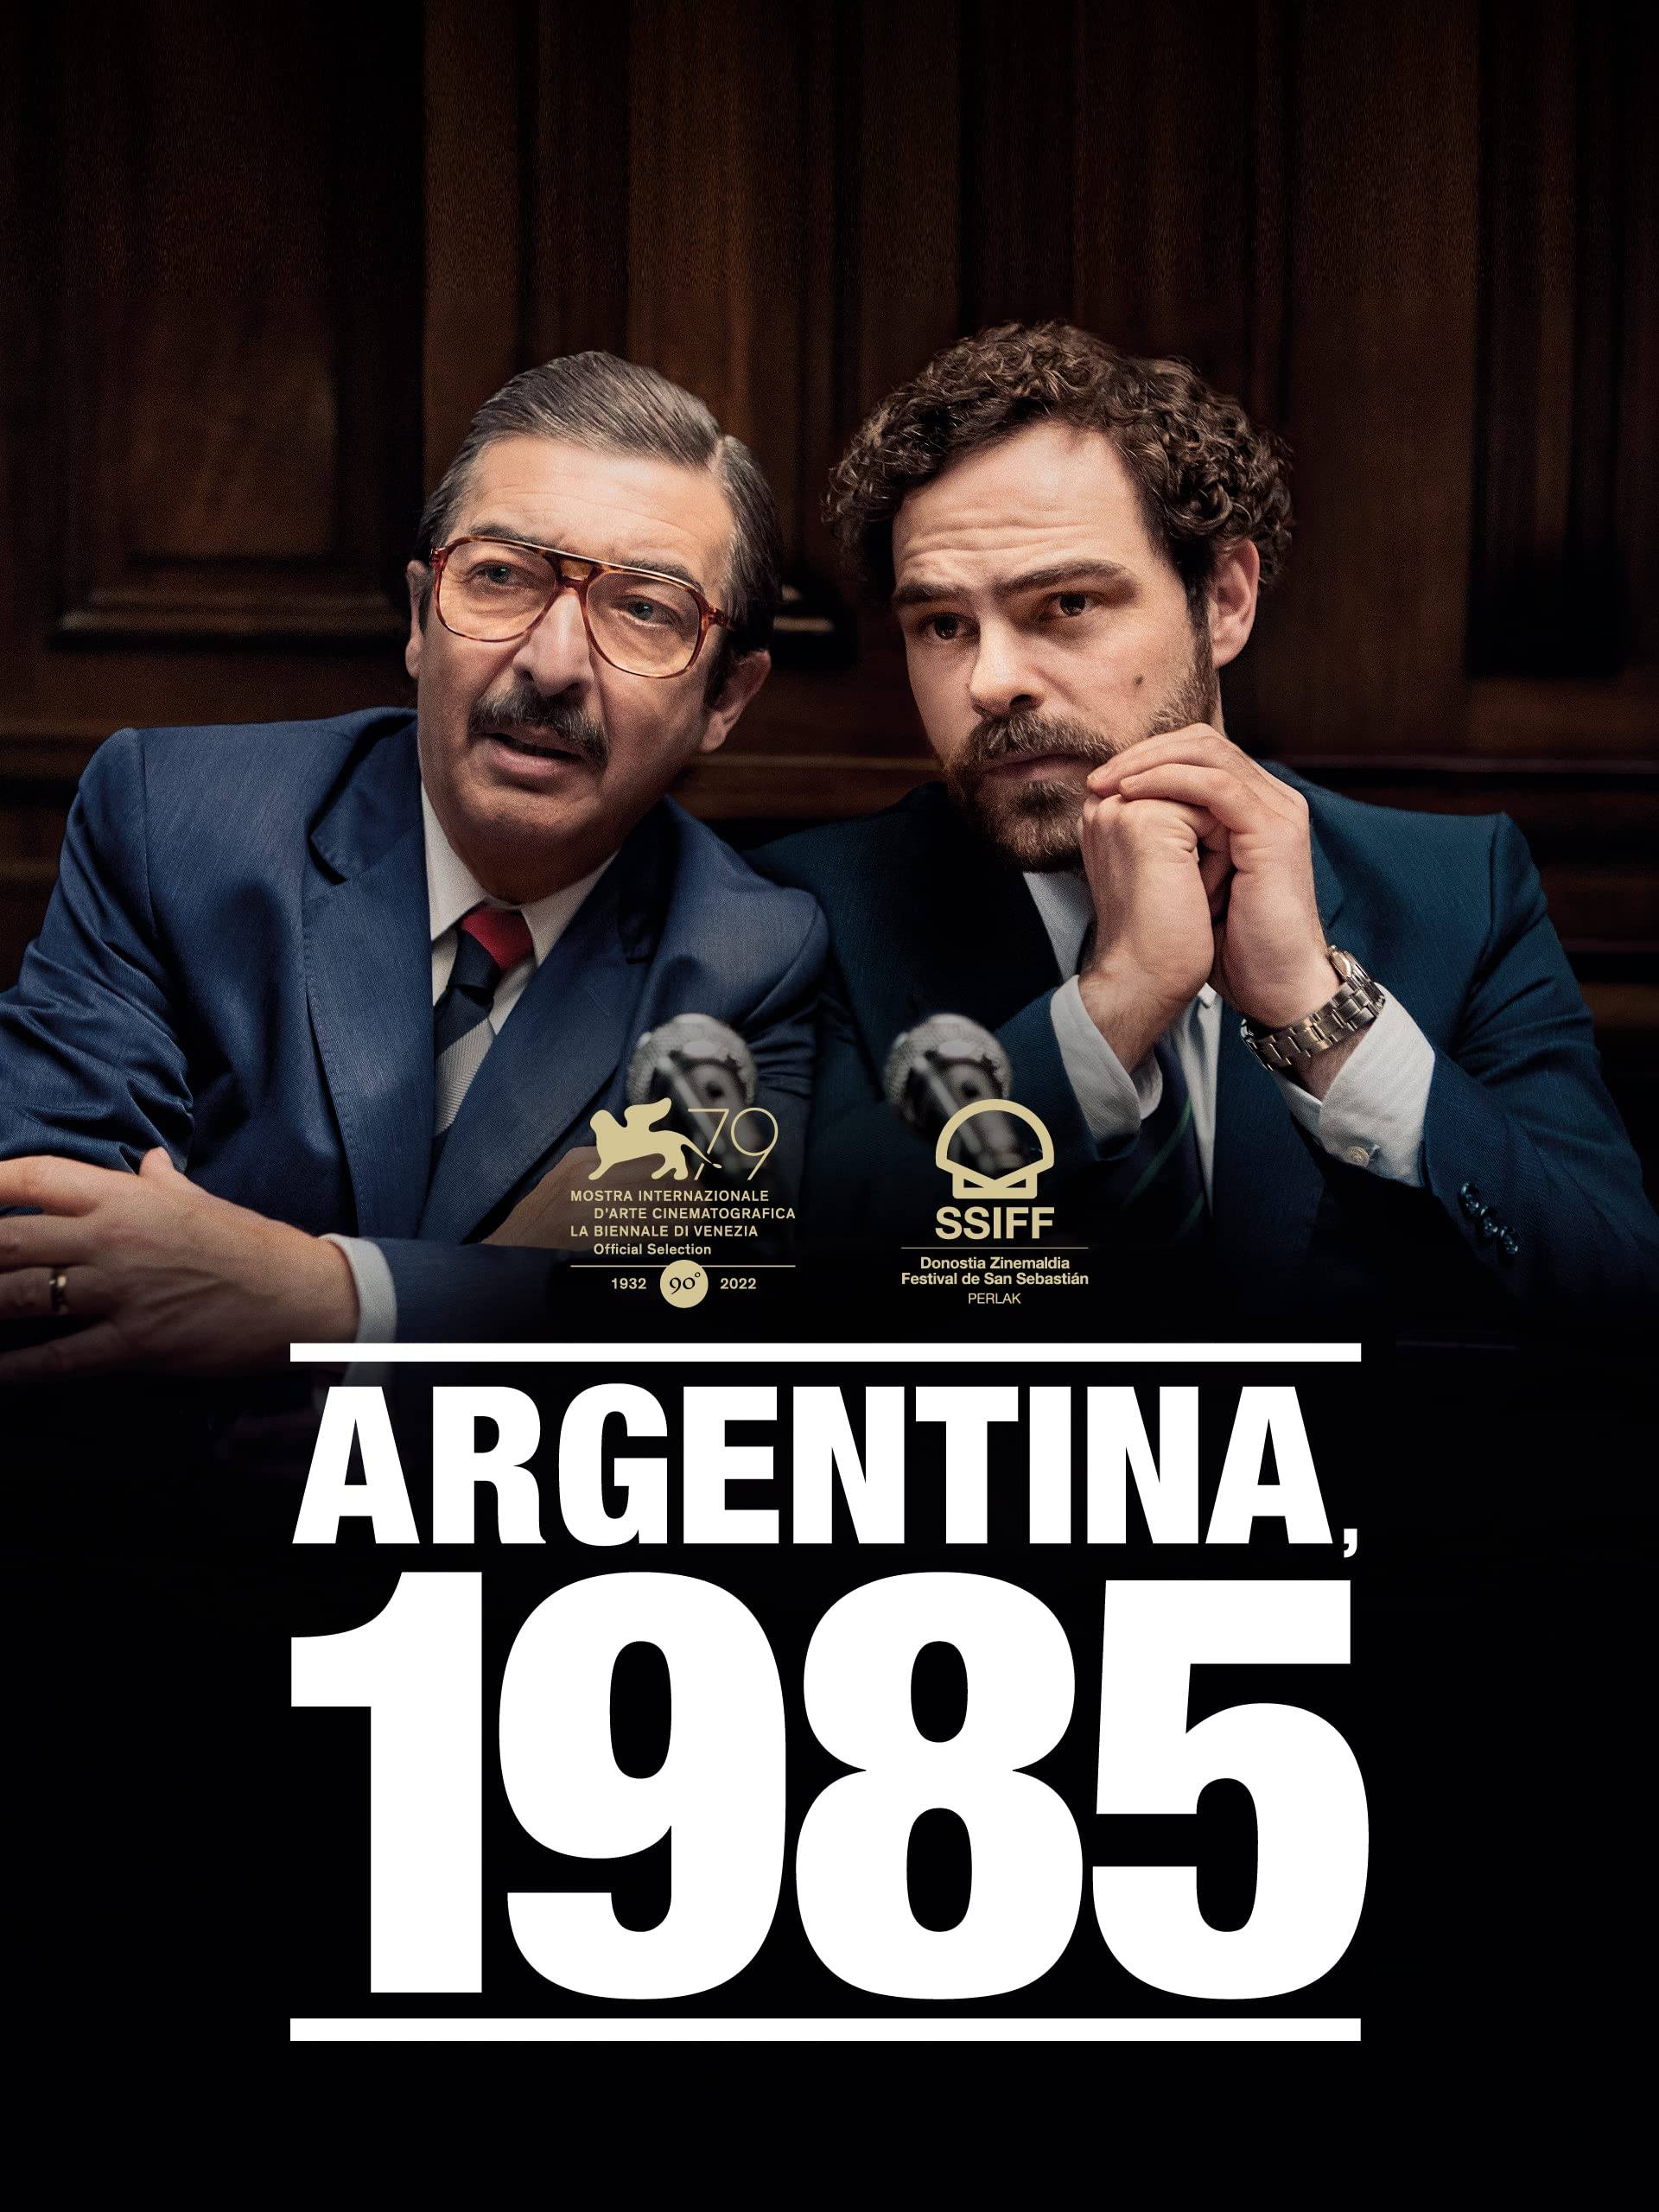 دوباره هرگز - فیلم آرژانتین ۱۹۸۵  Image of دوباره هرگز - فیلم آرژانتین ۱۹۸۵